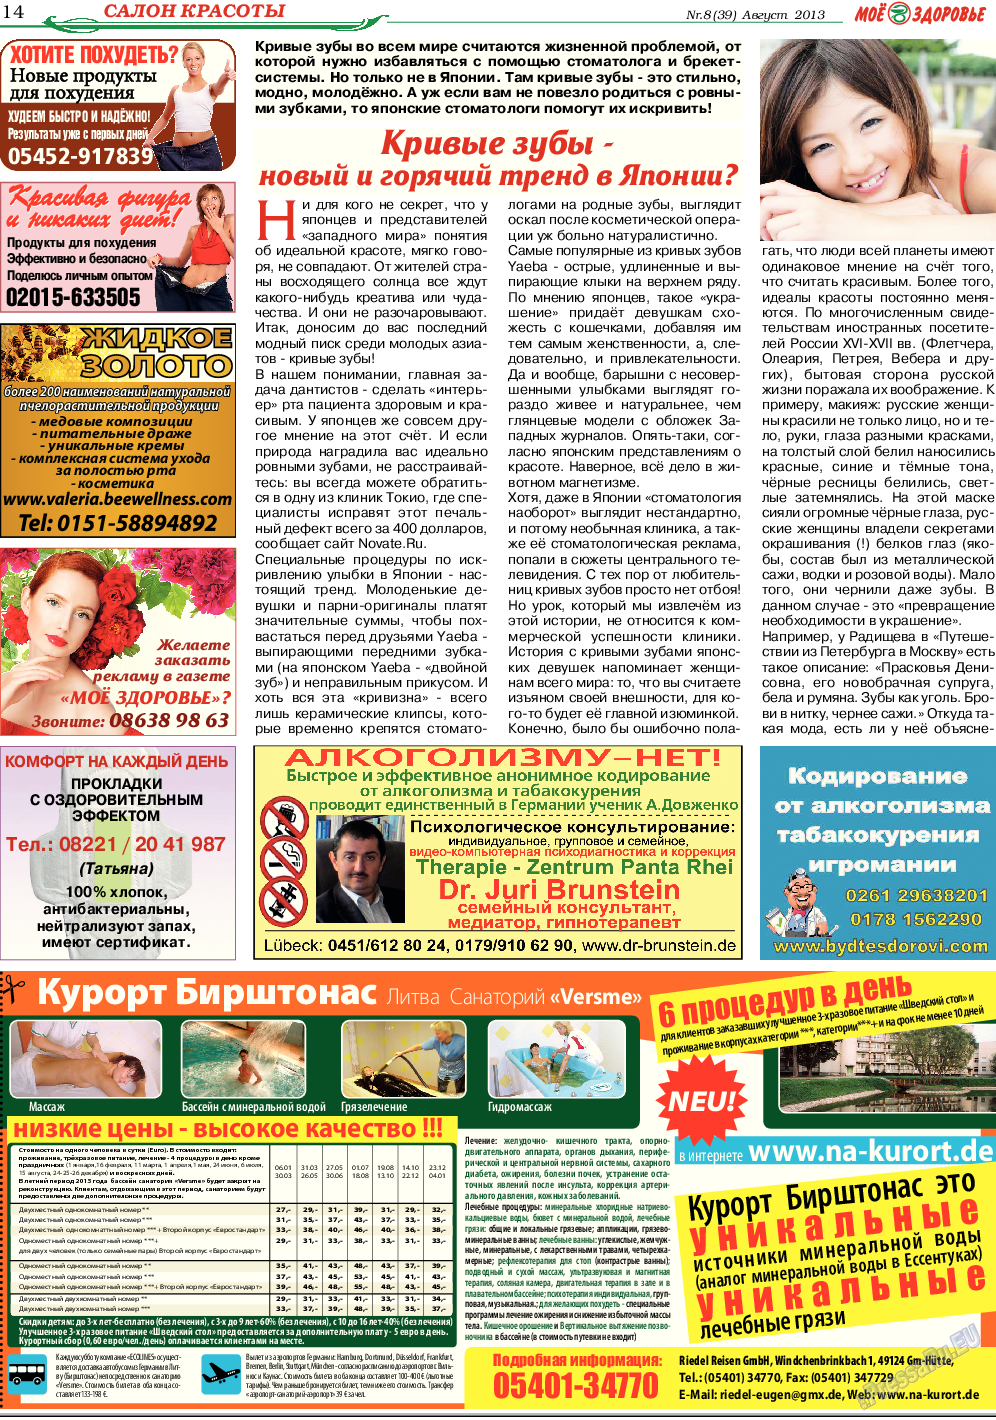 Кругозор (газета). 2013 год, номер 8, стр. 14